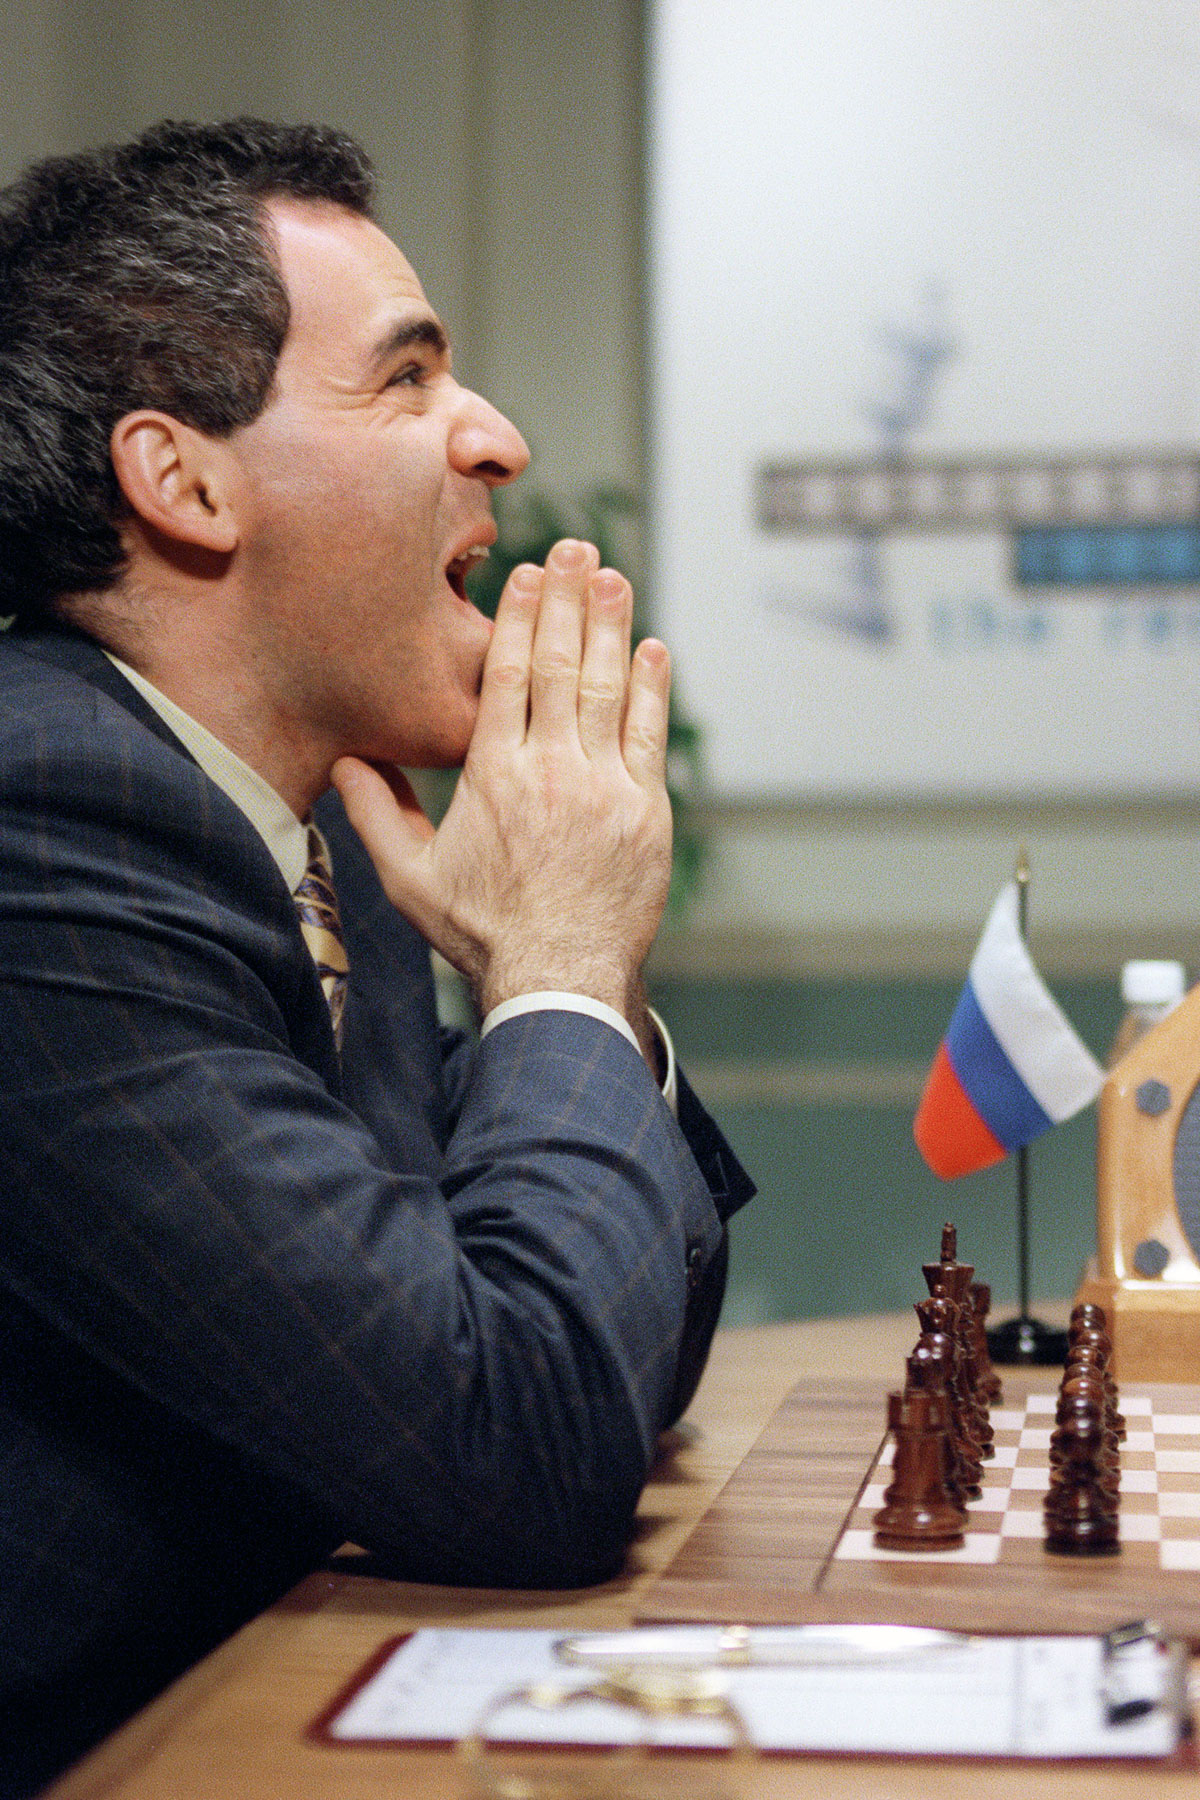 Shahmatnye matchi Kasparov Deep Blue 18